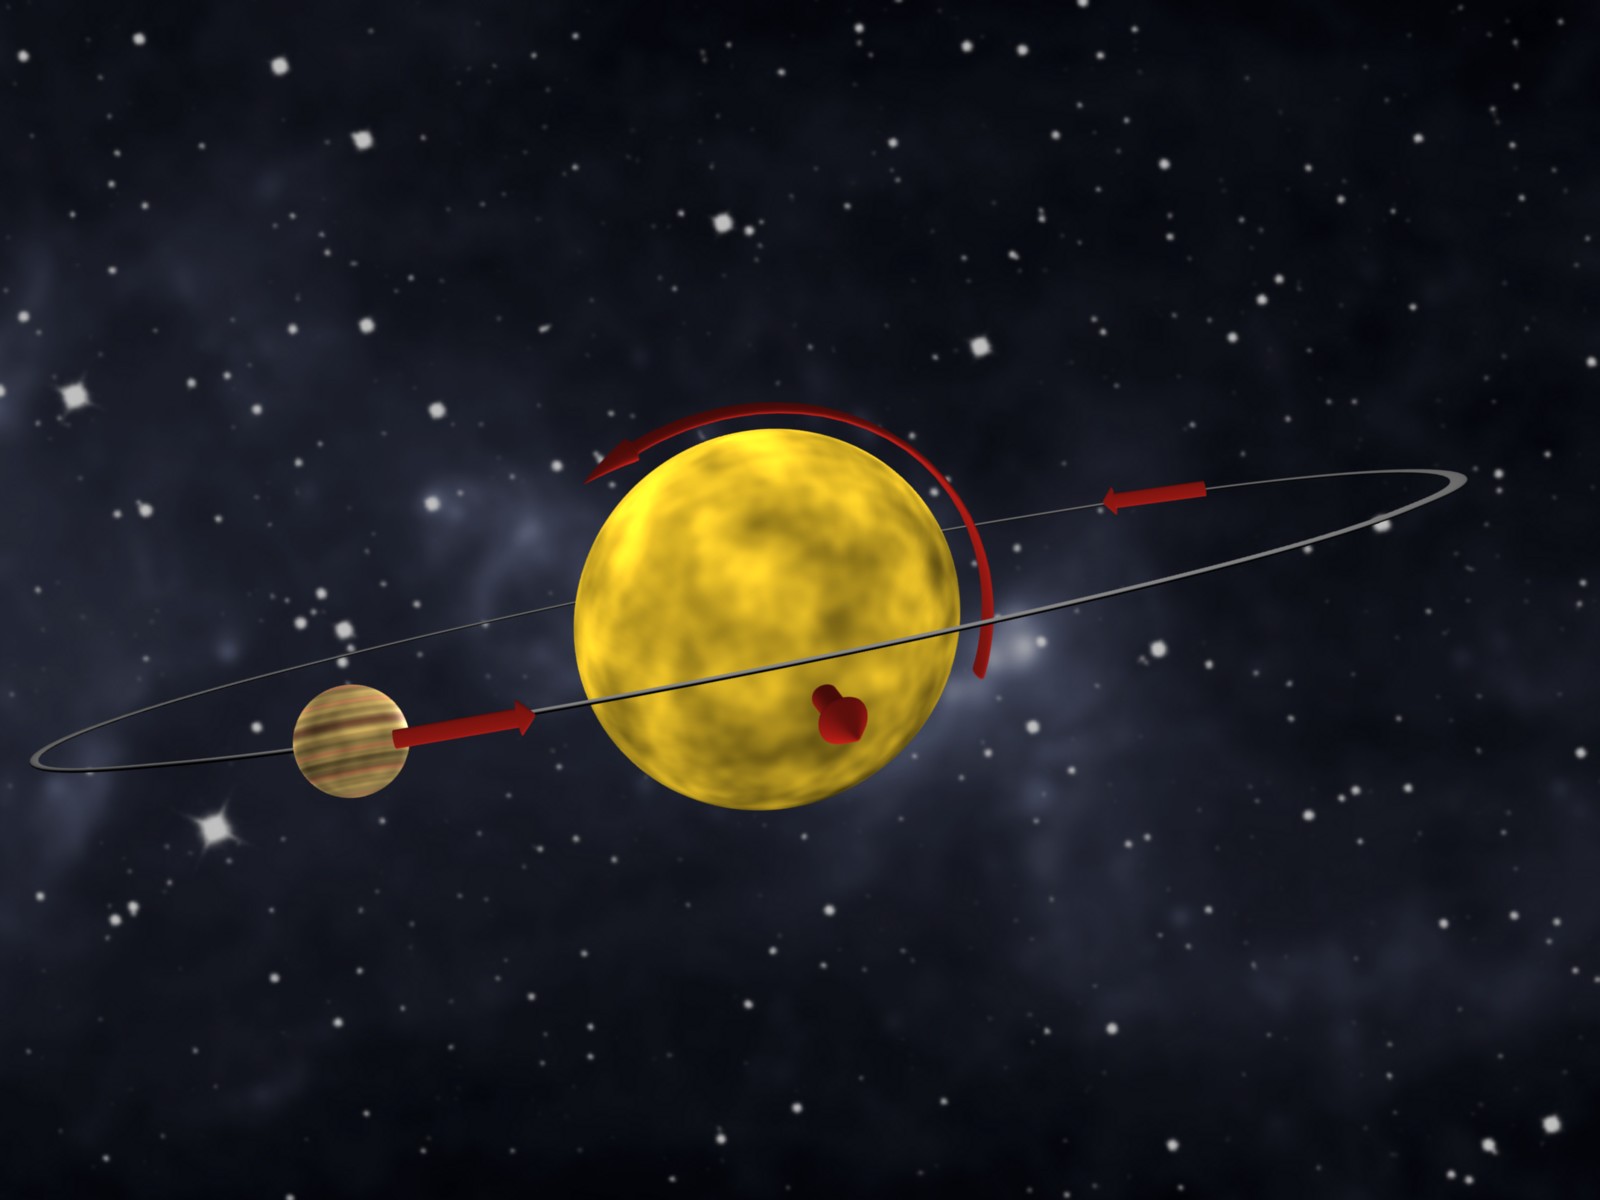 En jupiterlignende exoplanet kredser vinkelret på dens stjernes omdrejning, så planeten skiftevis passerer over stjernens nordpol og sydpol. Illustration: MM.